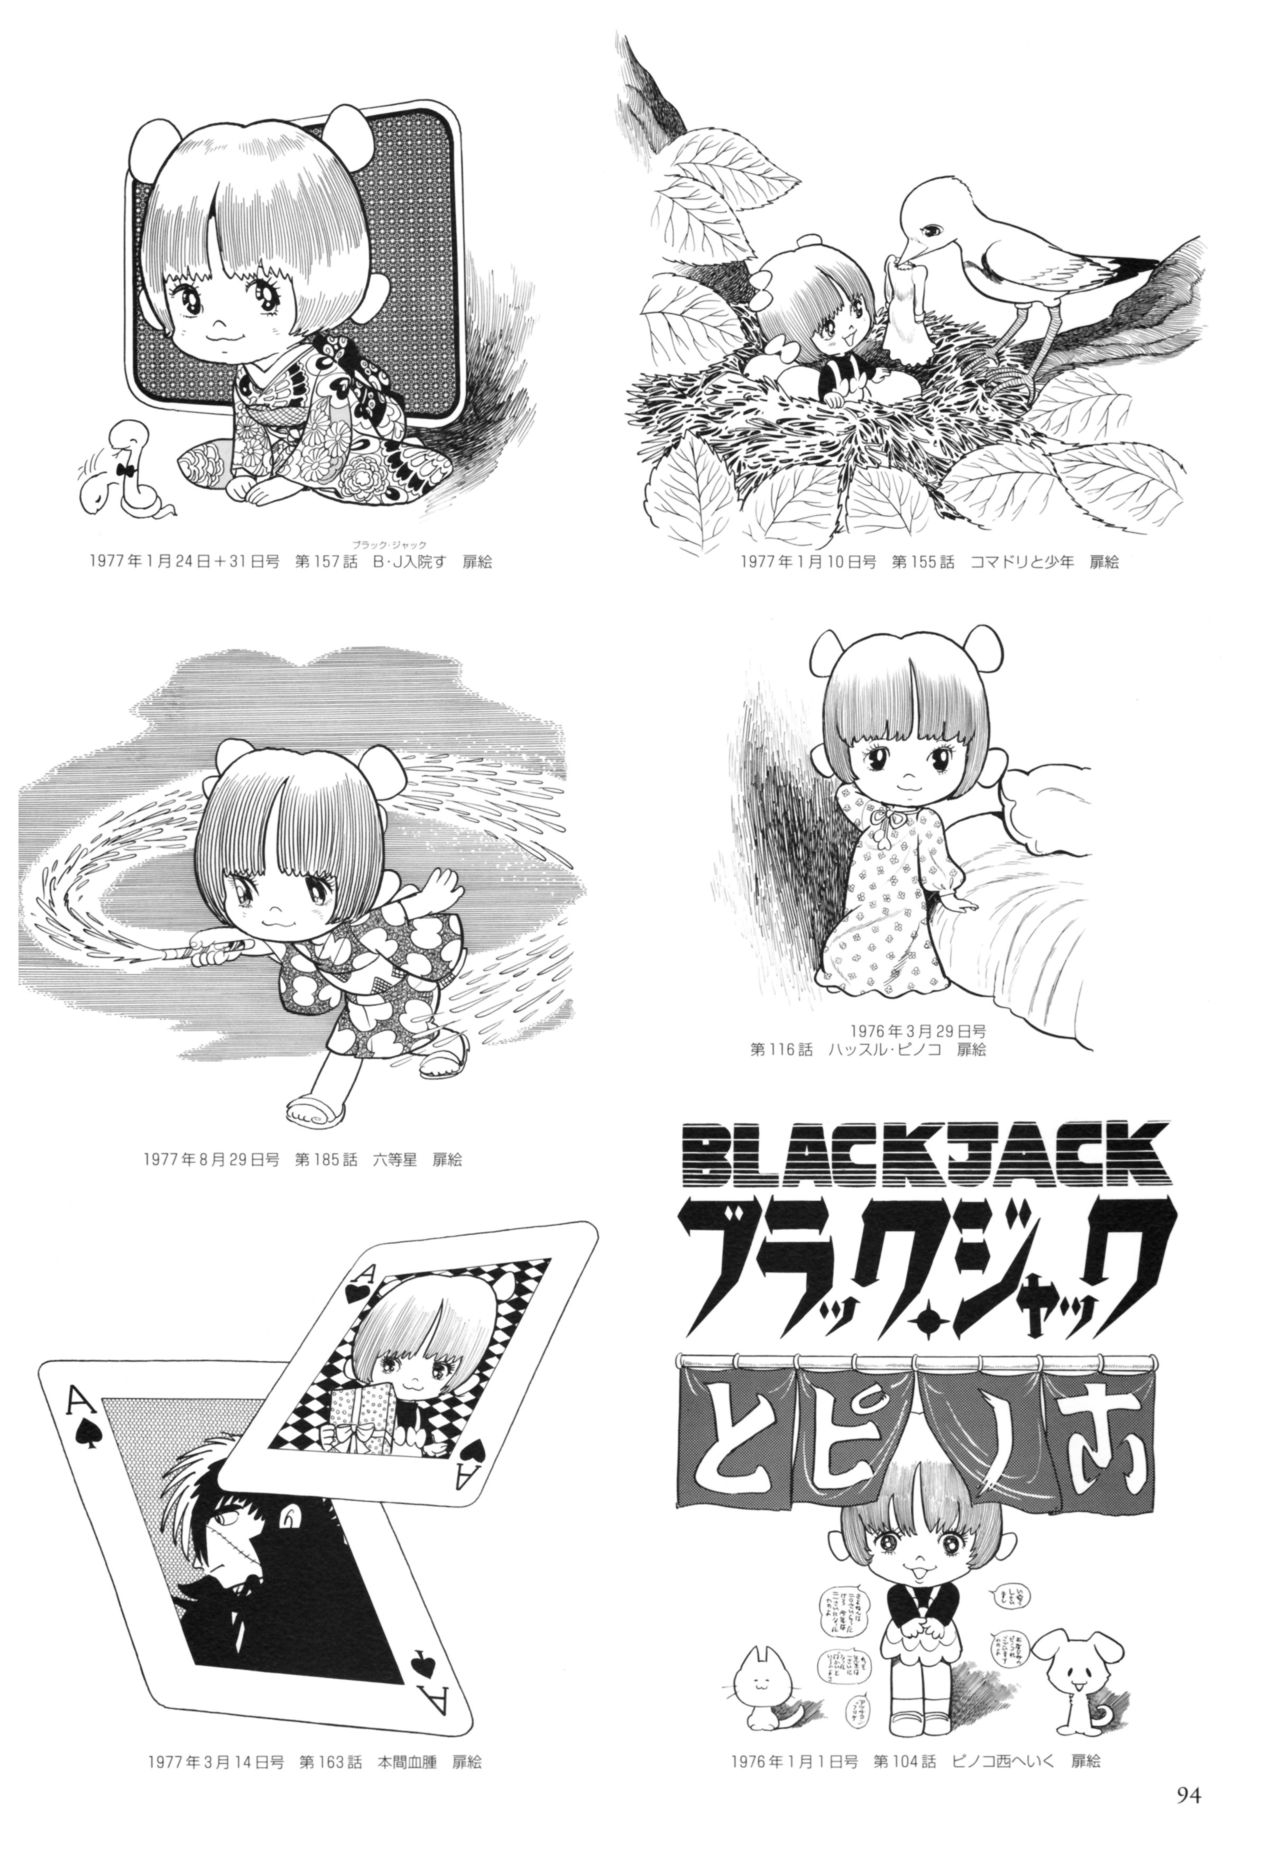 All of Black Jack By Osamu Tezuka 98